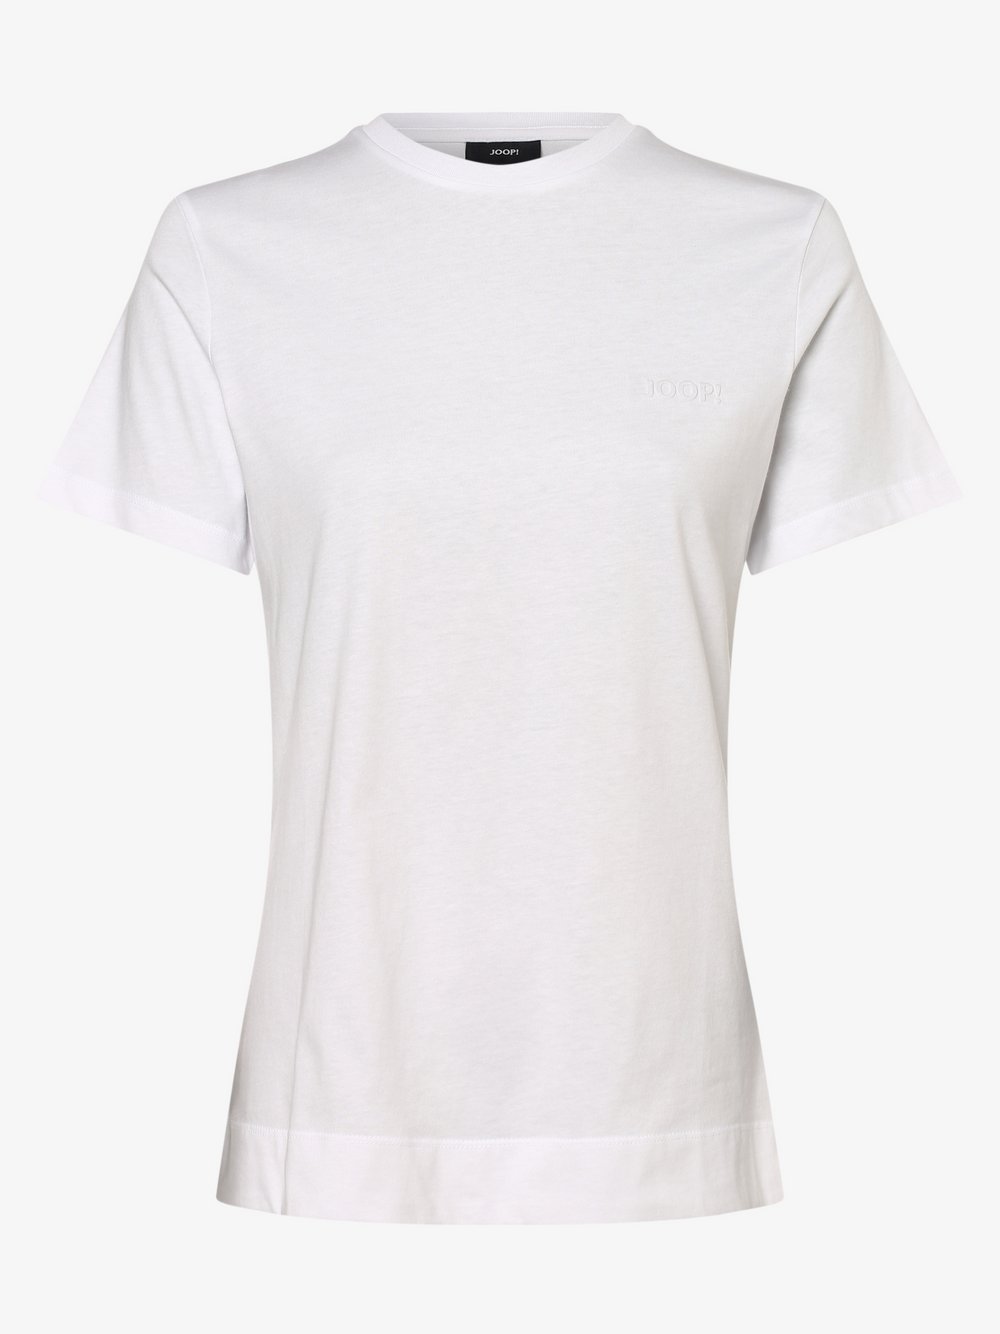 Joop - T-shirt damski – Todi, biały